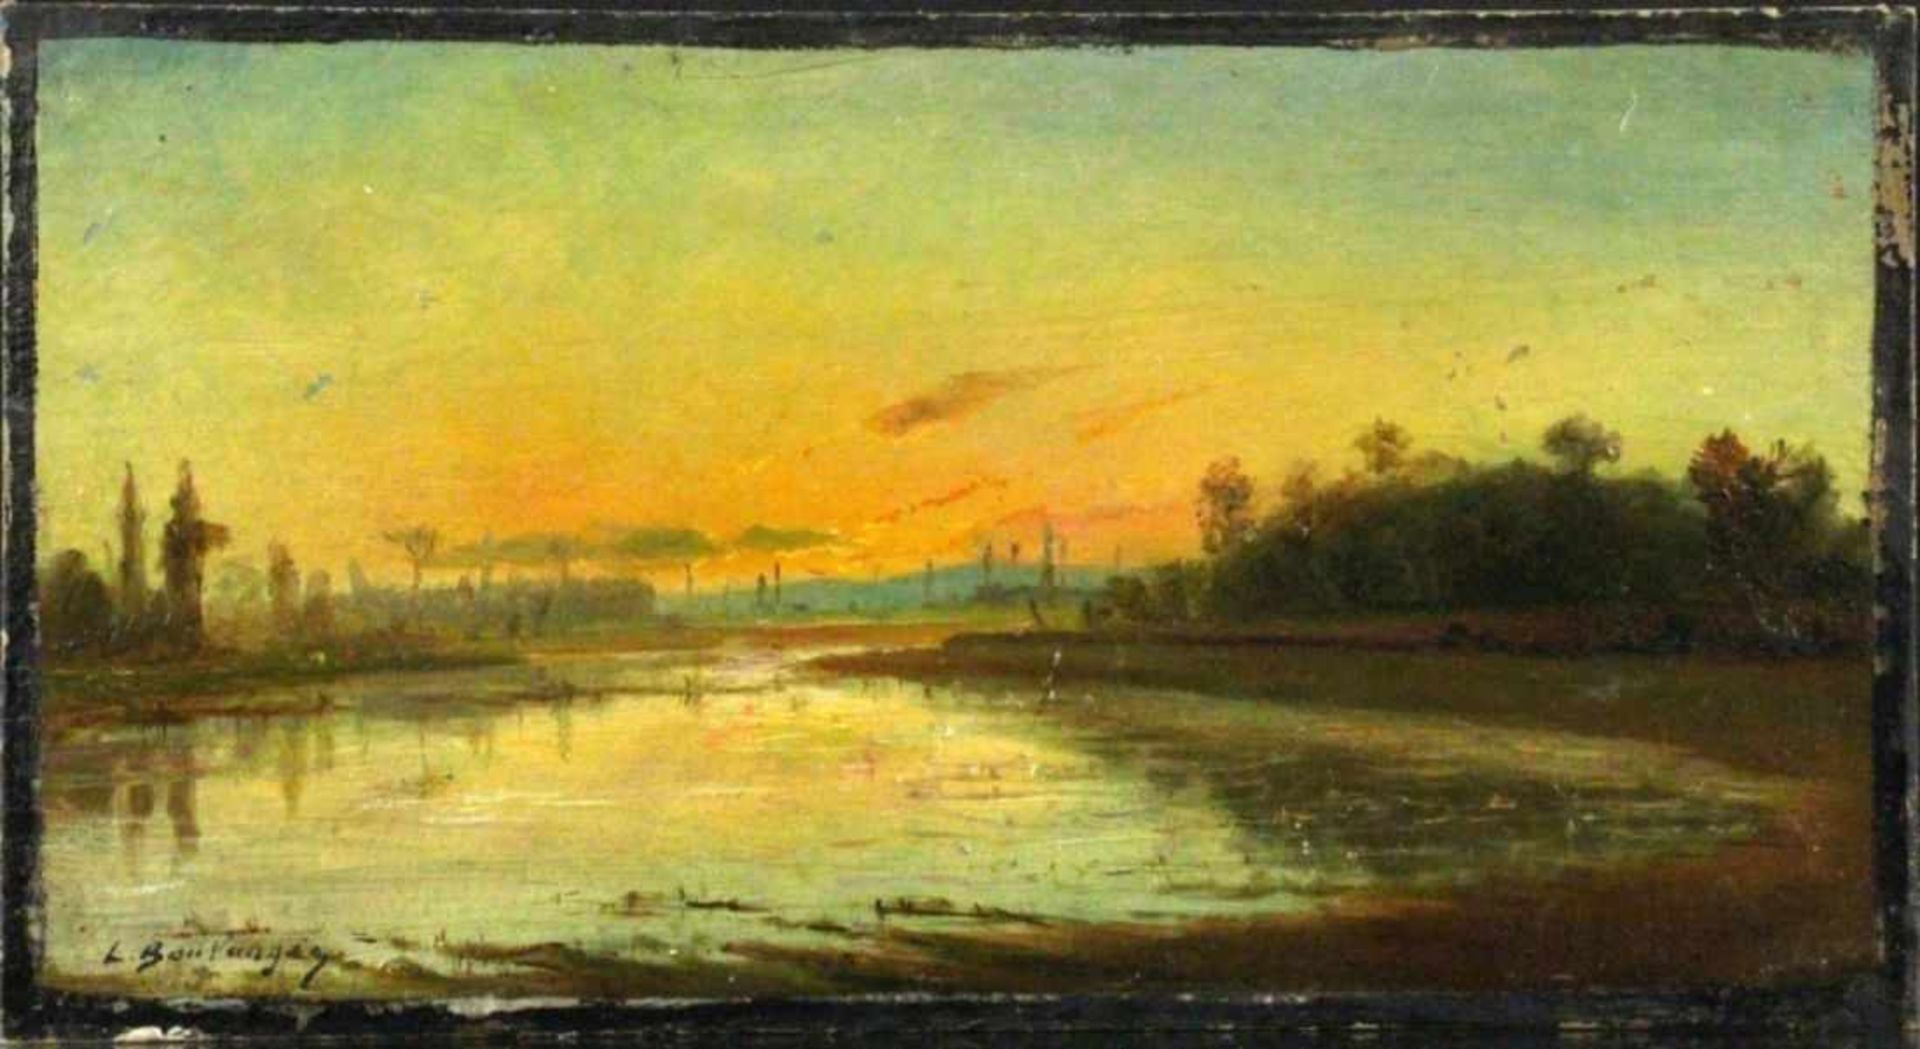 BOULANGER, LOUIS Vercelli 1806 - 1867 Dijon Seascape in the evening light. Oil oncardboard,